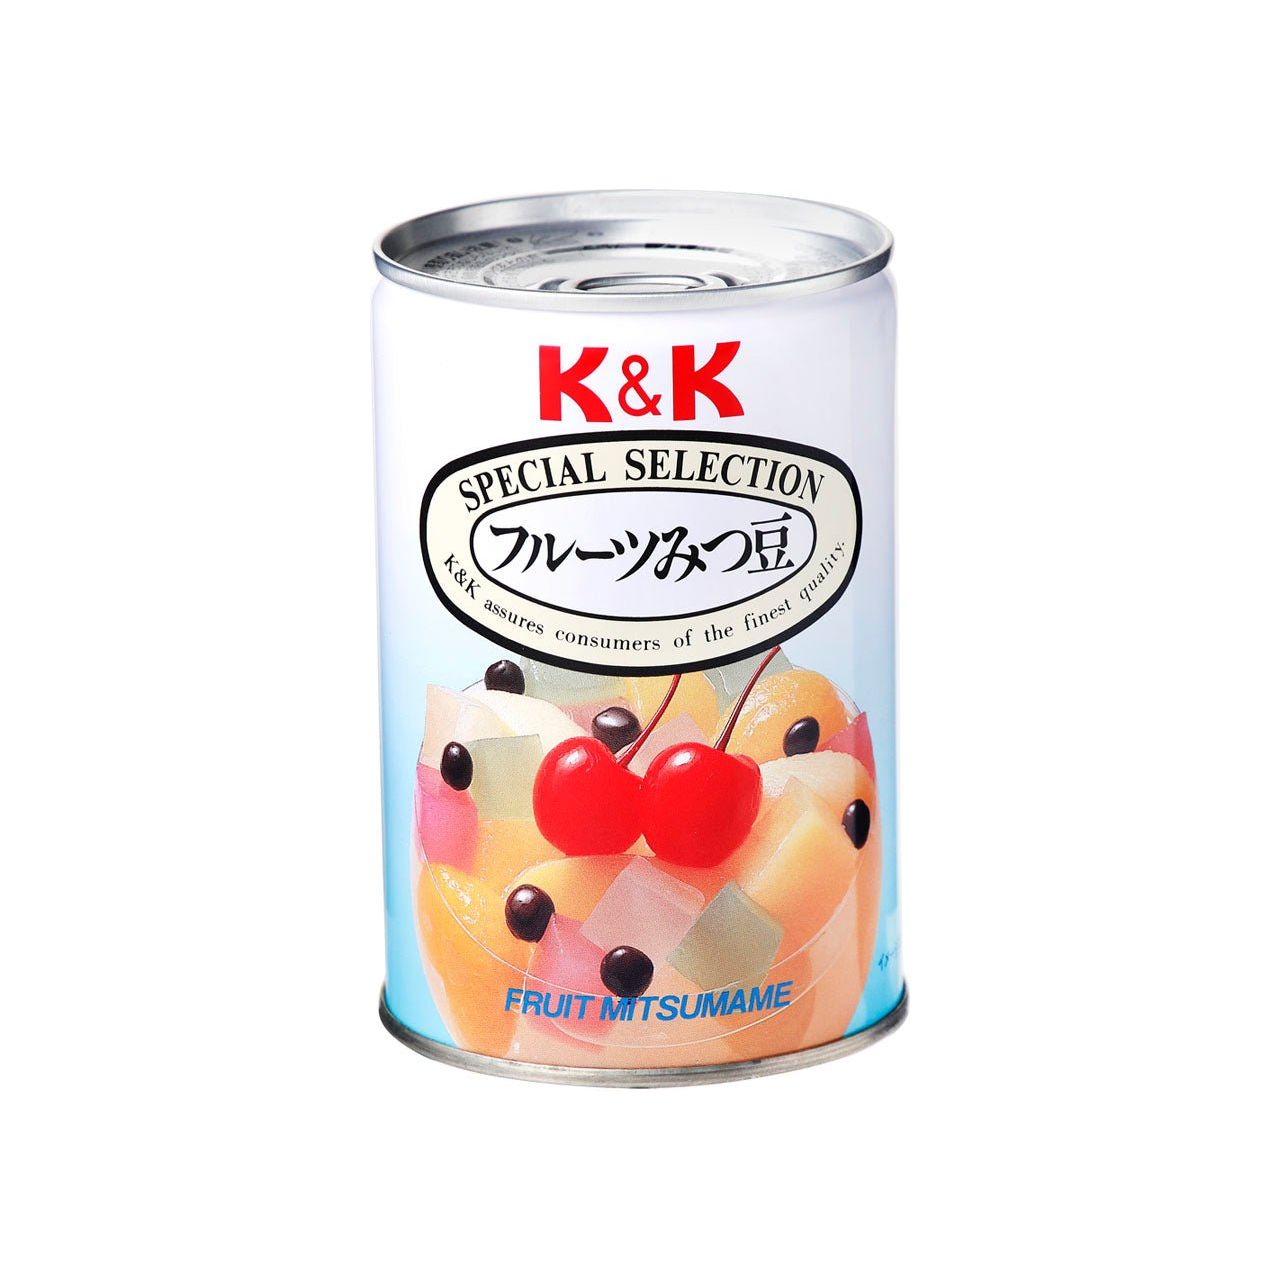 K&K Fruit Mitsu frijoles (5 tipos de frutas, agar, vainas rojas)